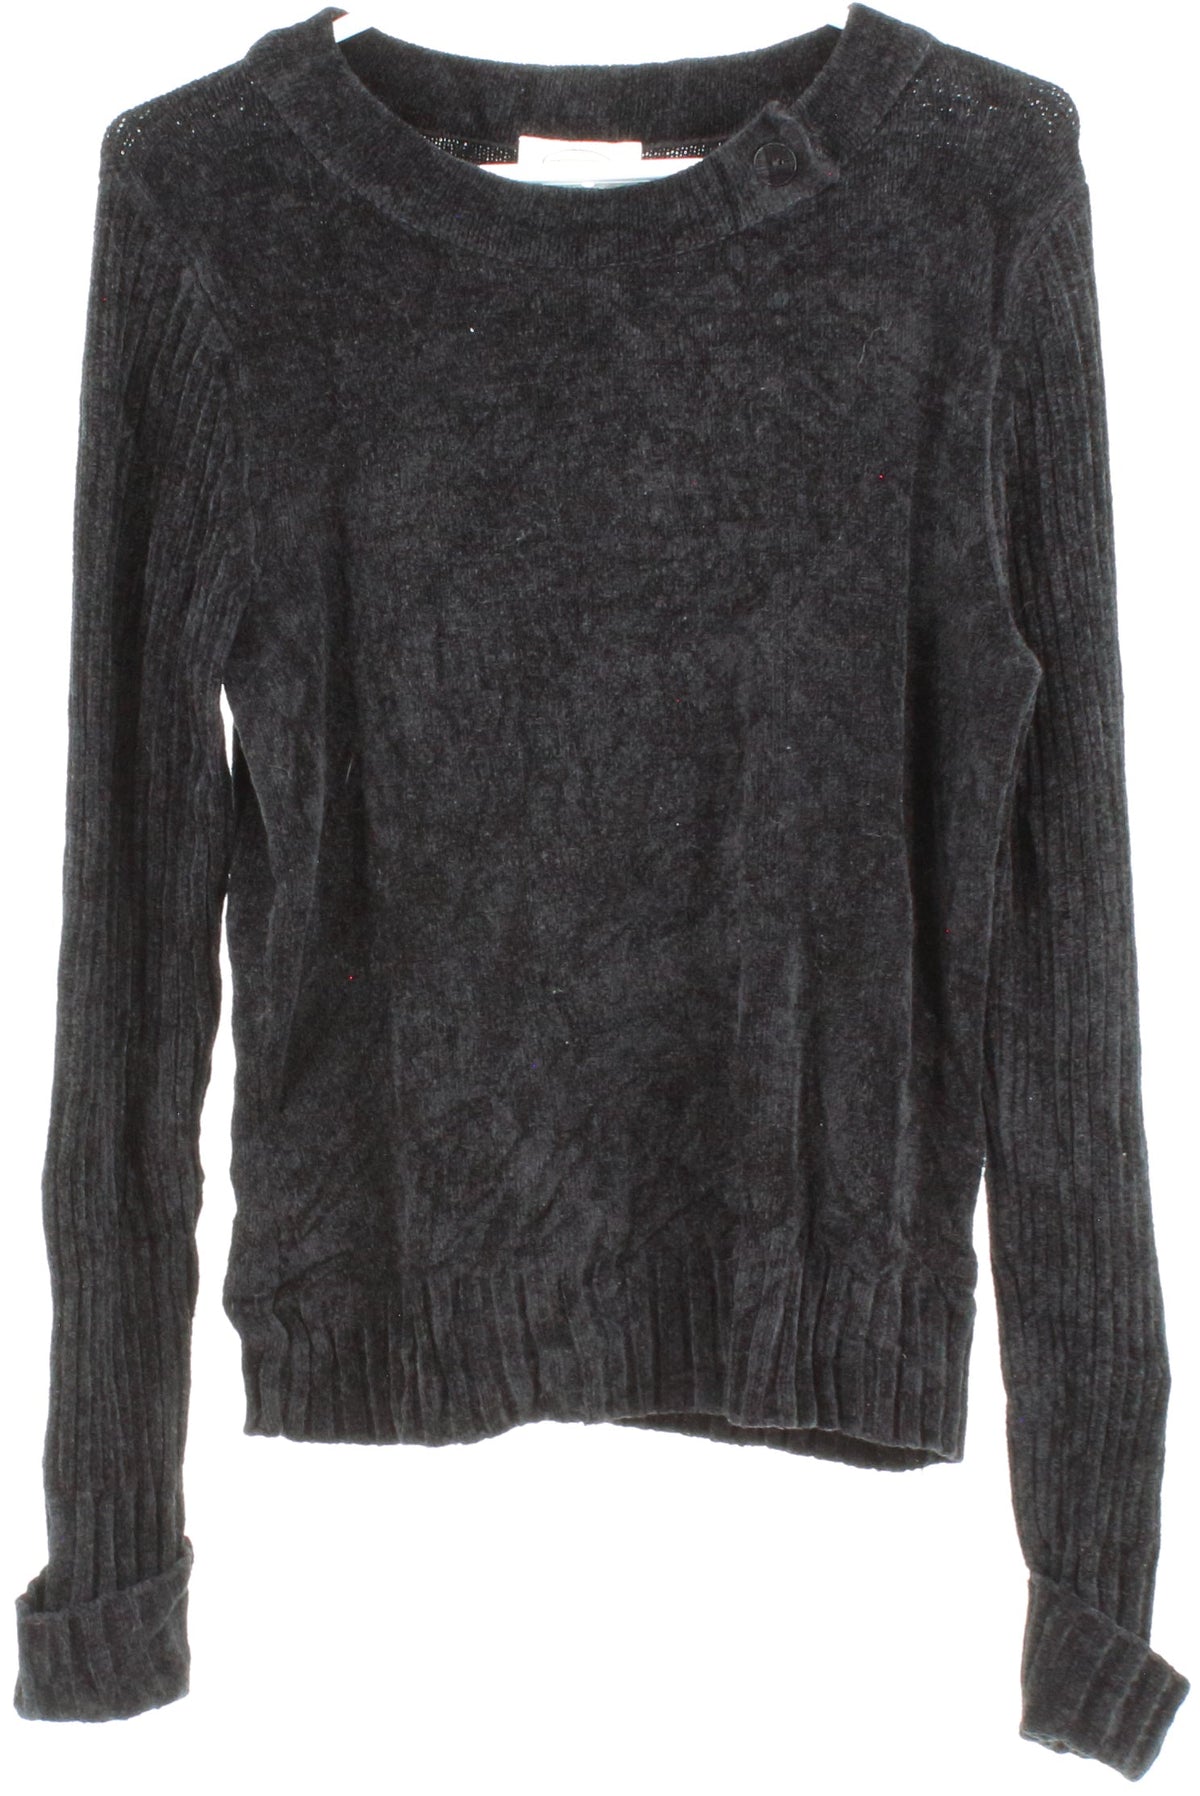 Talbots Black Velvet Women's Sweater